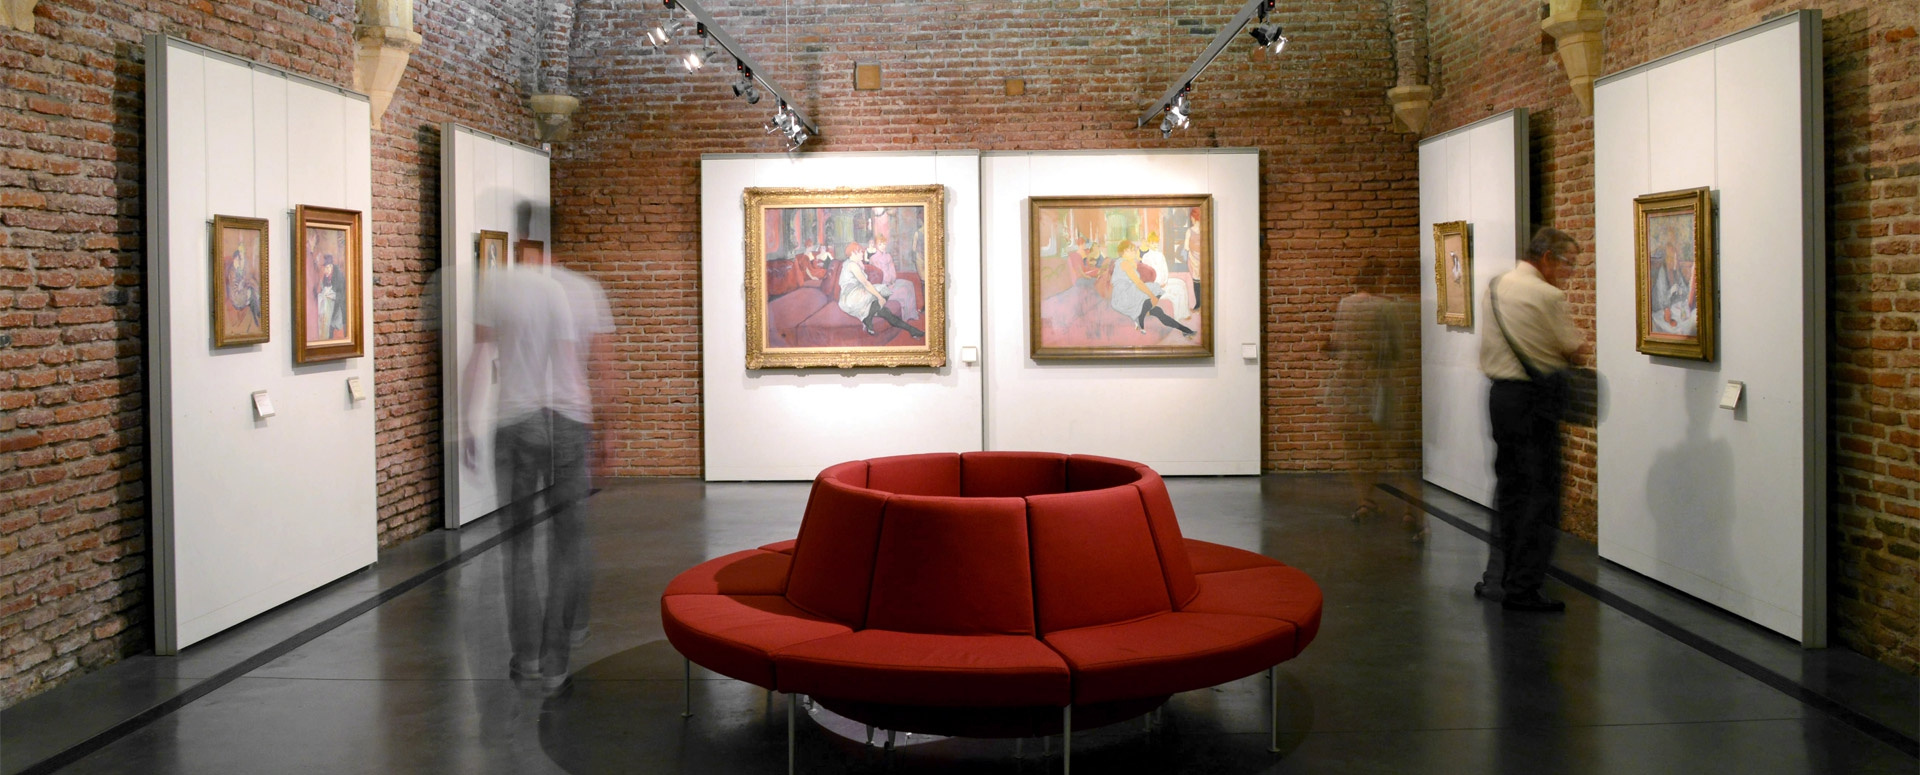 Exposition at the Toulouse-Lautrec Museum. Photo Source: Albi Office De Tourisme